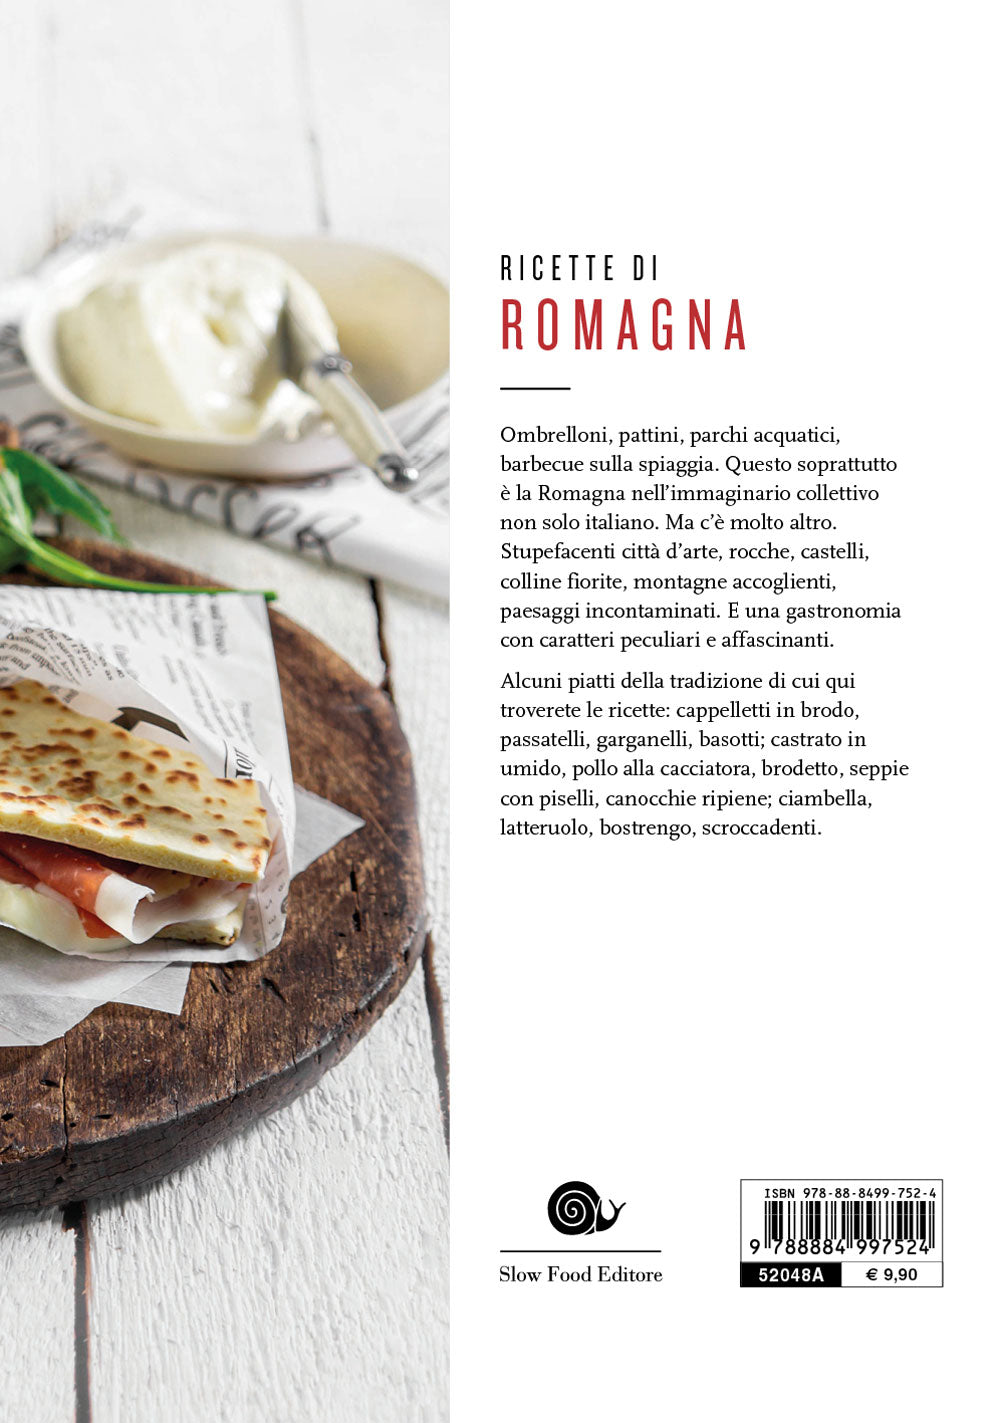 Ricette di Romagna. 120 ricette della tradizione